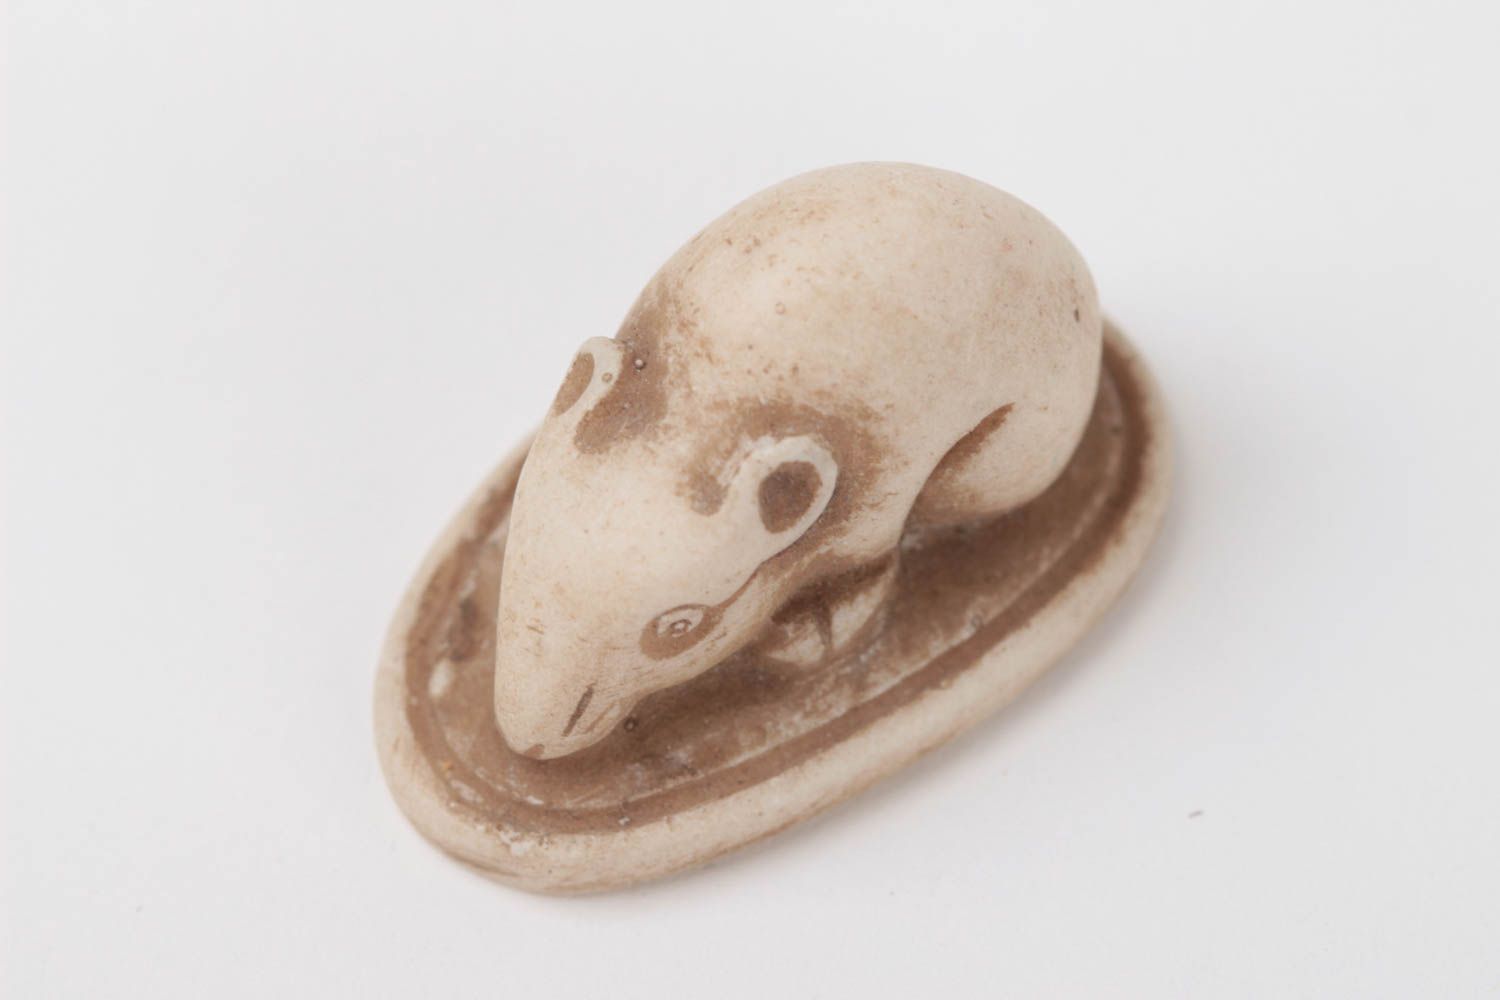 Миниатюрная фигурка крысы из полимерной смолы и мраморной крошка хенд мейд фото 4